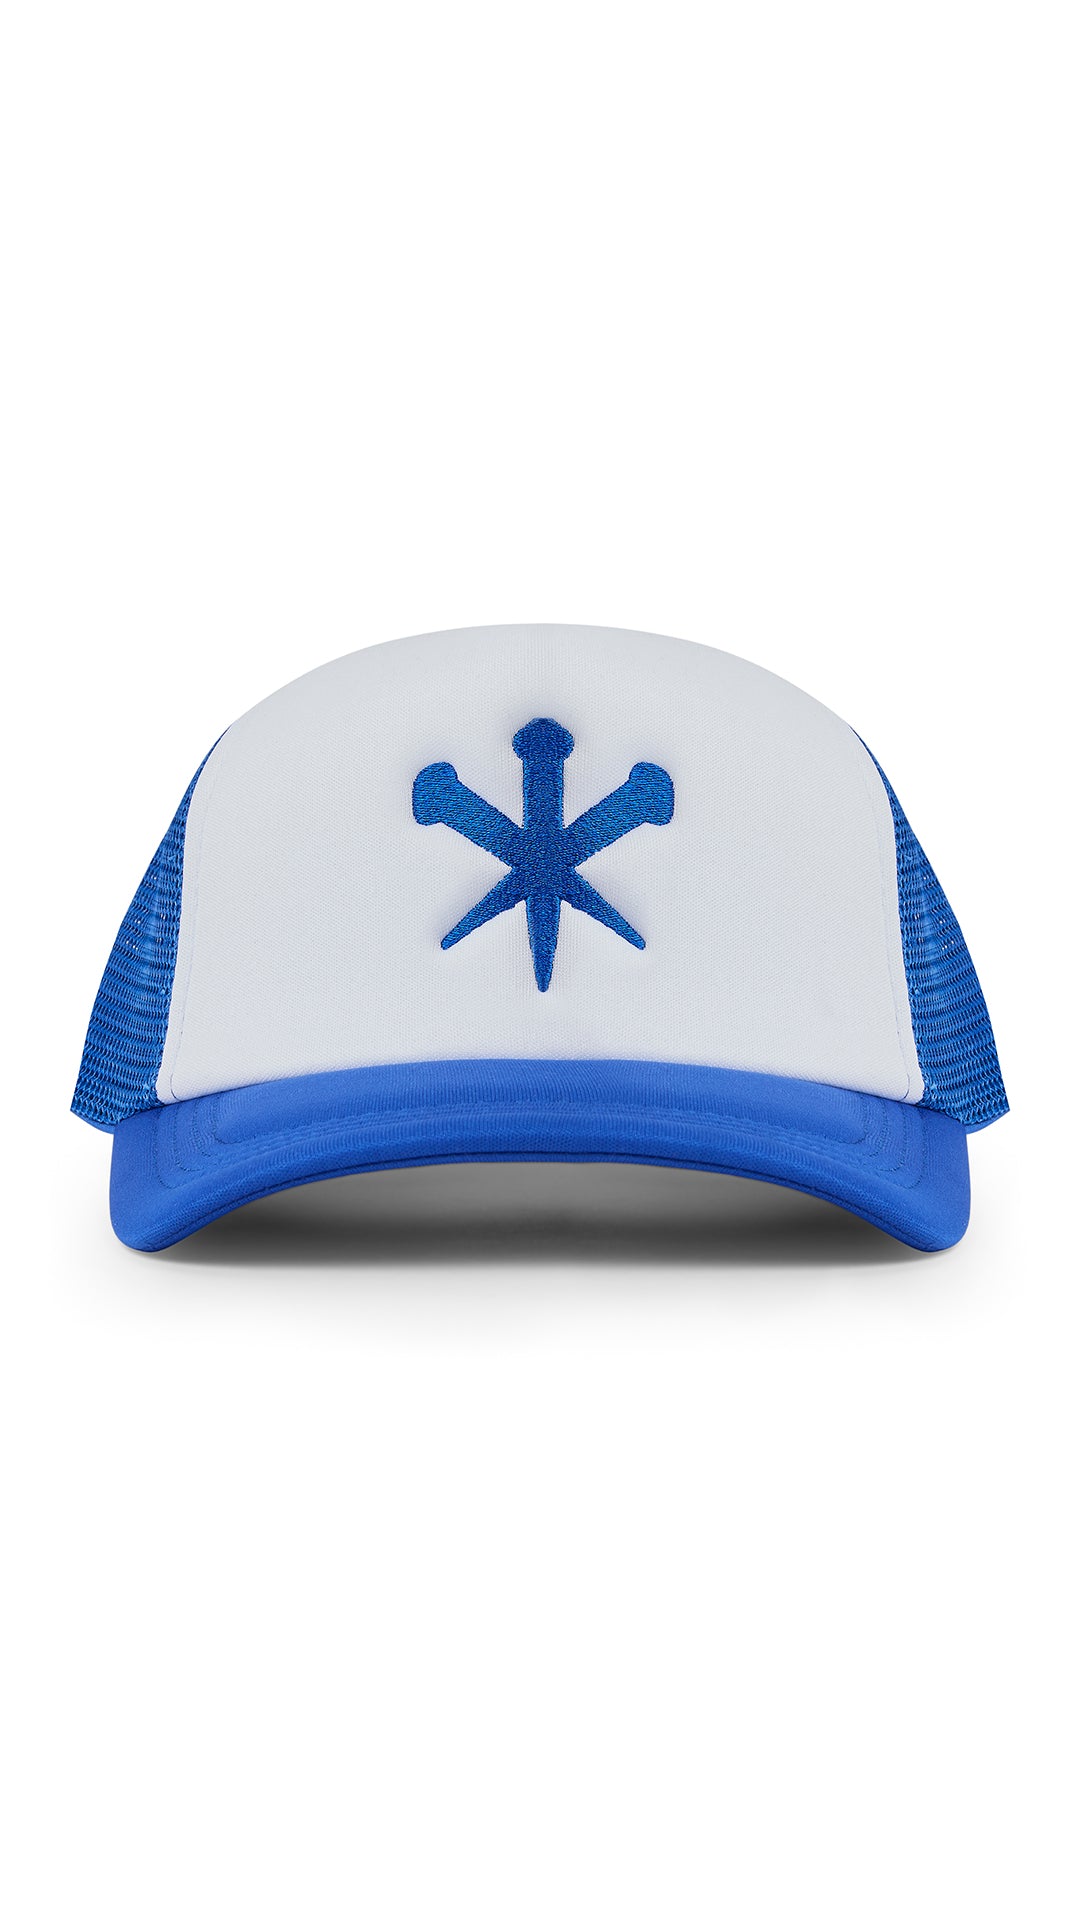 CROSS BLUE HAT